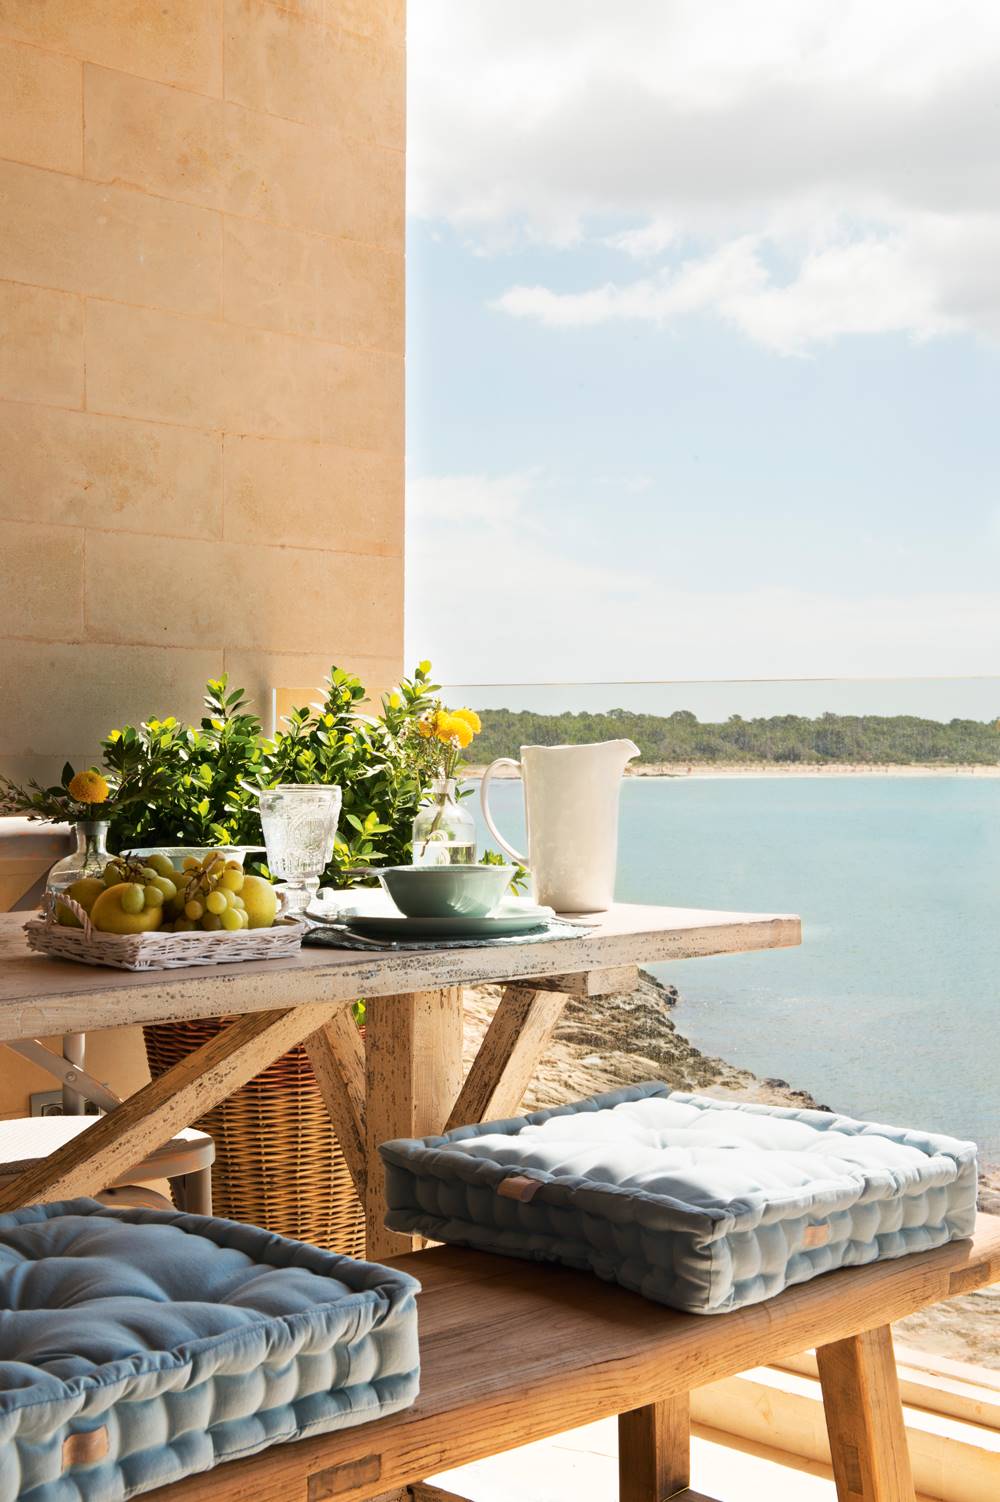 Detalle de comedor exterior en la terraza con vistas al mar, mesa y banco de madera y cojines de asiento de color azul 433818